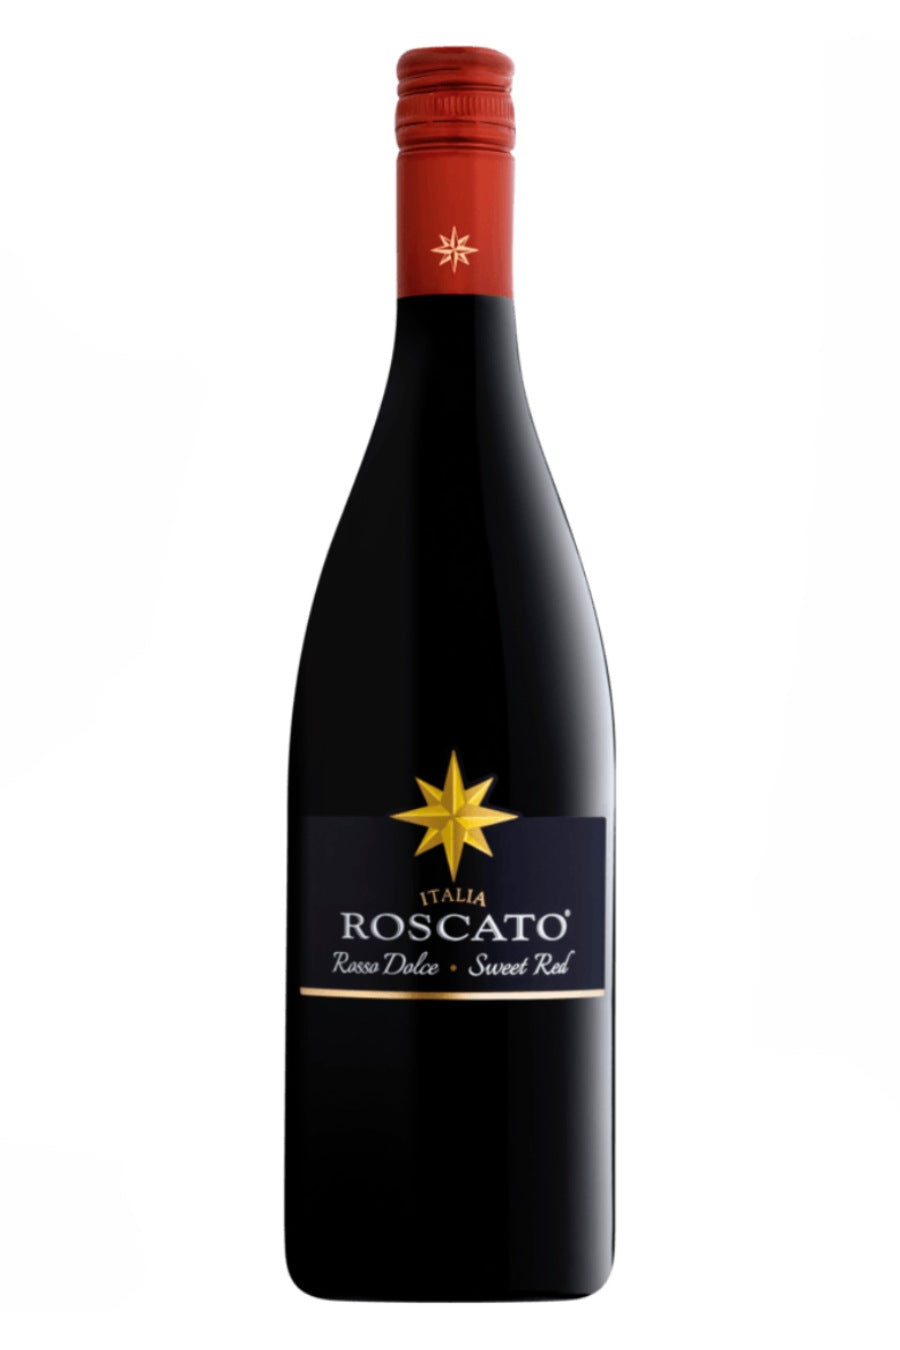 Roscato Rosso Dolce Italian Red Wine at Empire Wine